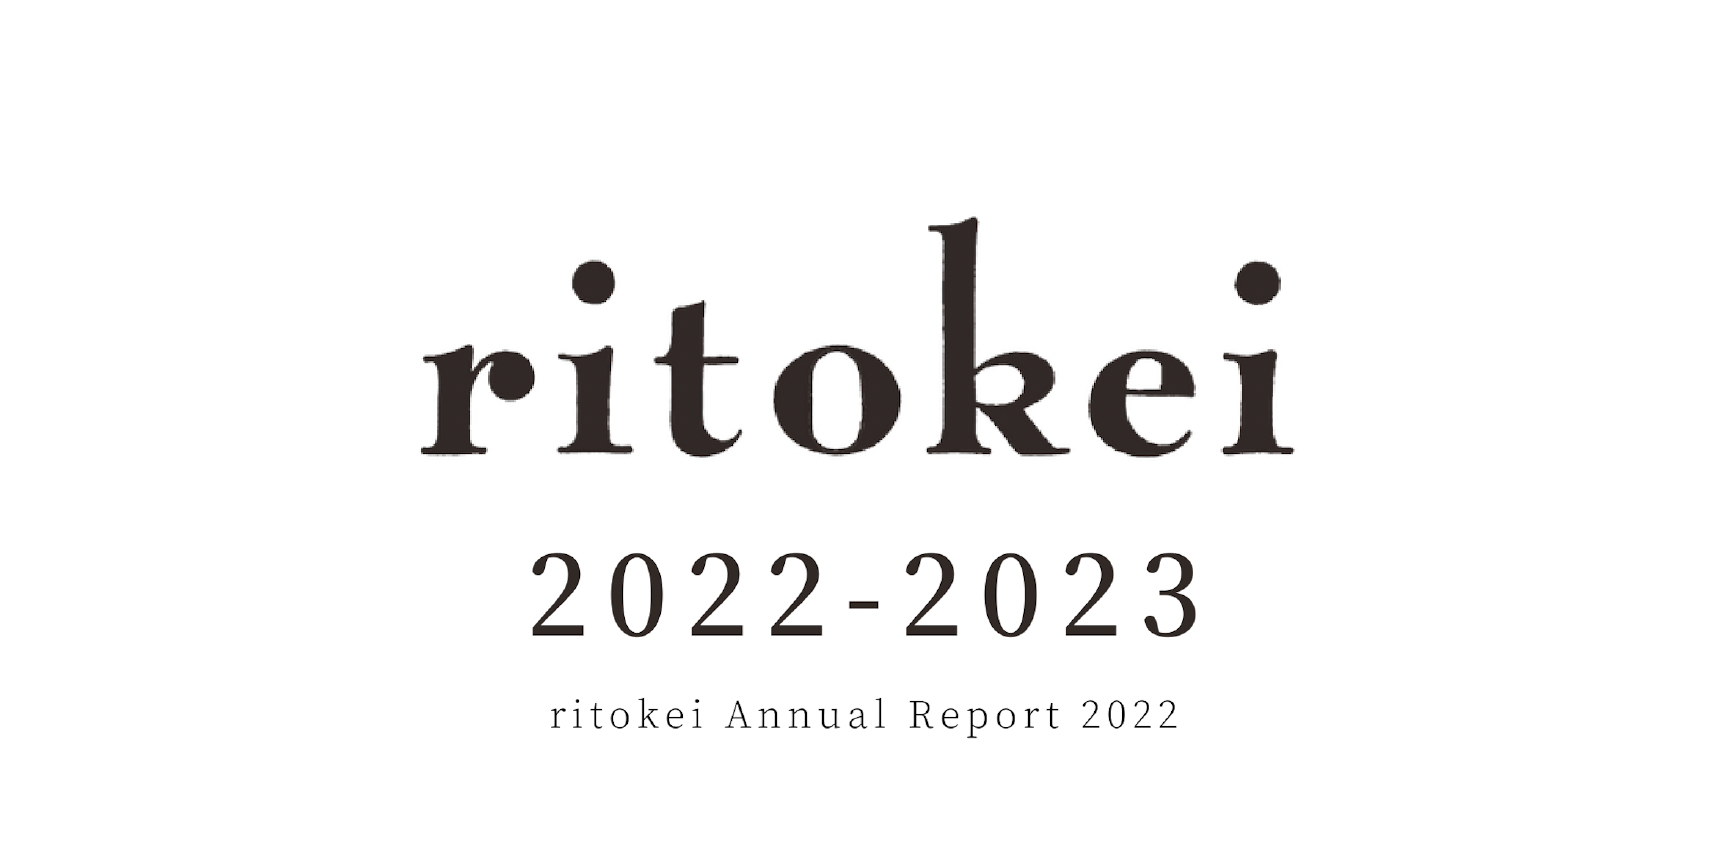 【島サポーターの皆さまへ】2022年度年次報告書を公開しました